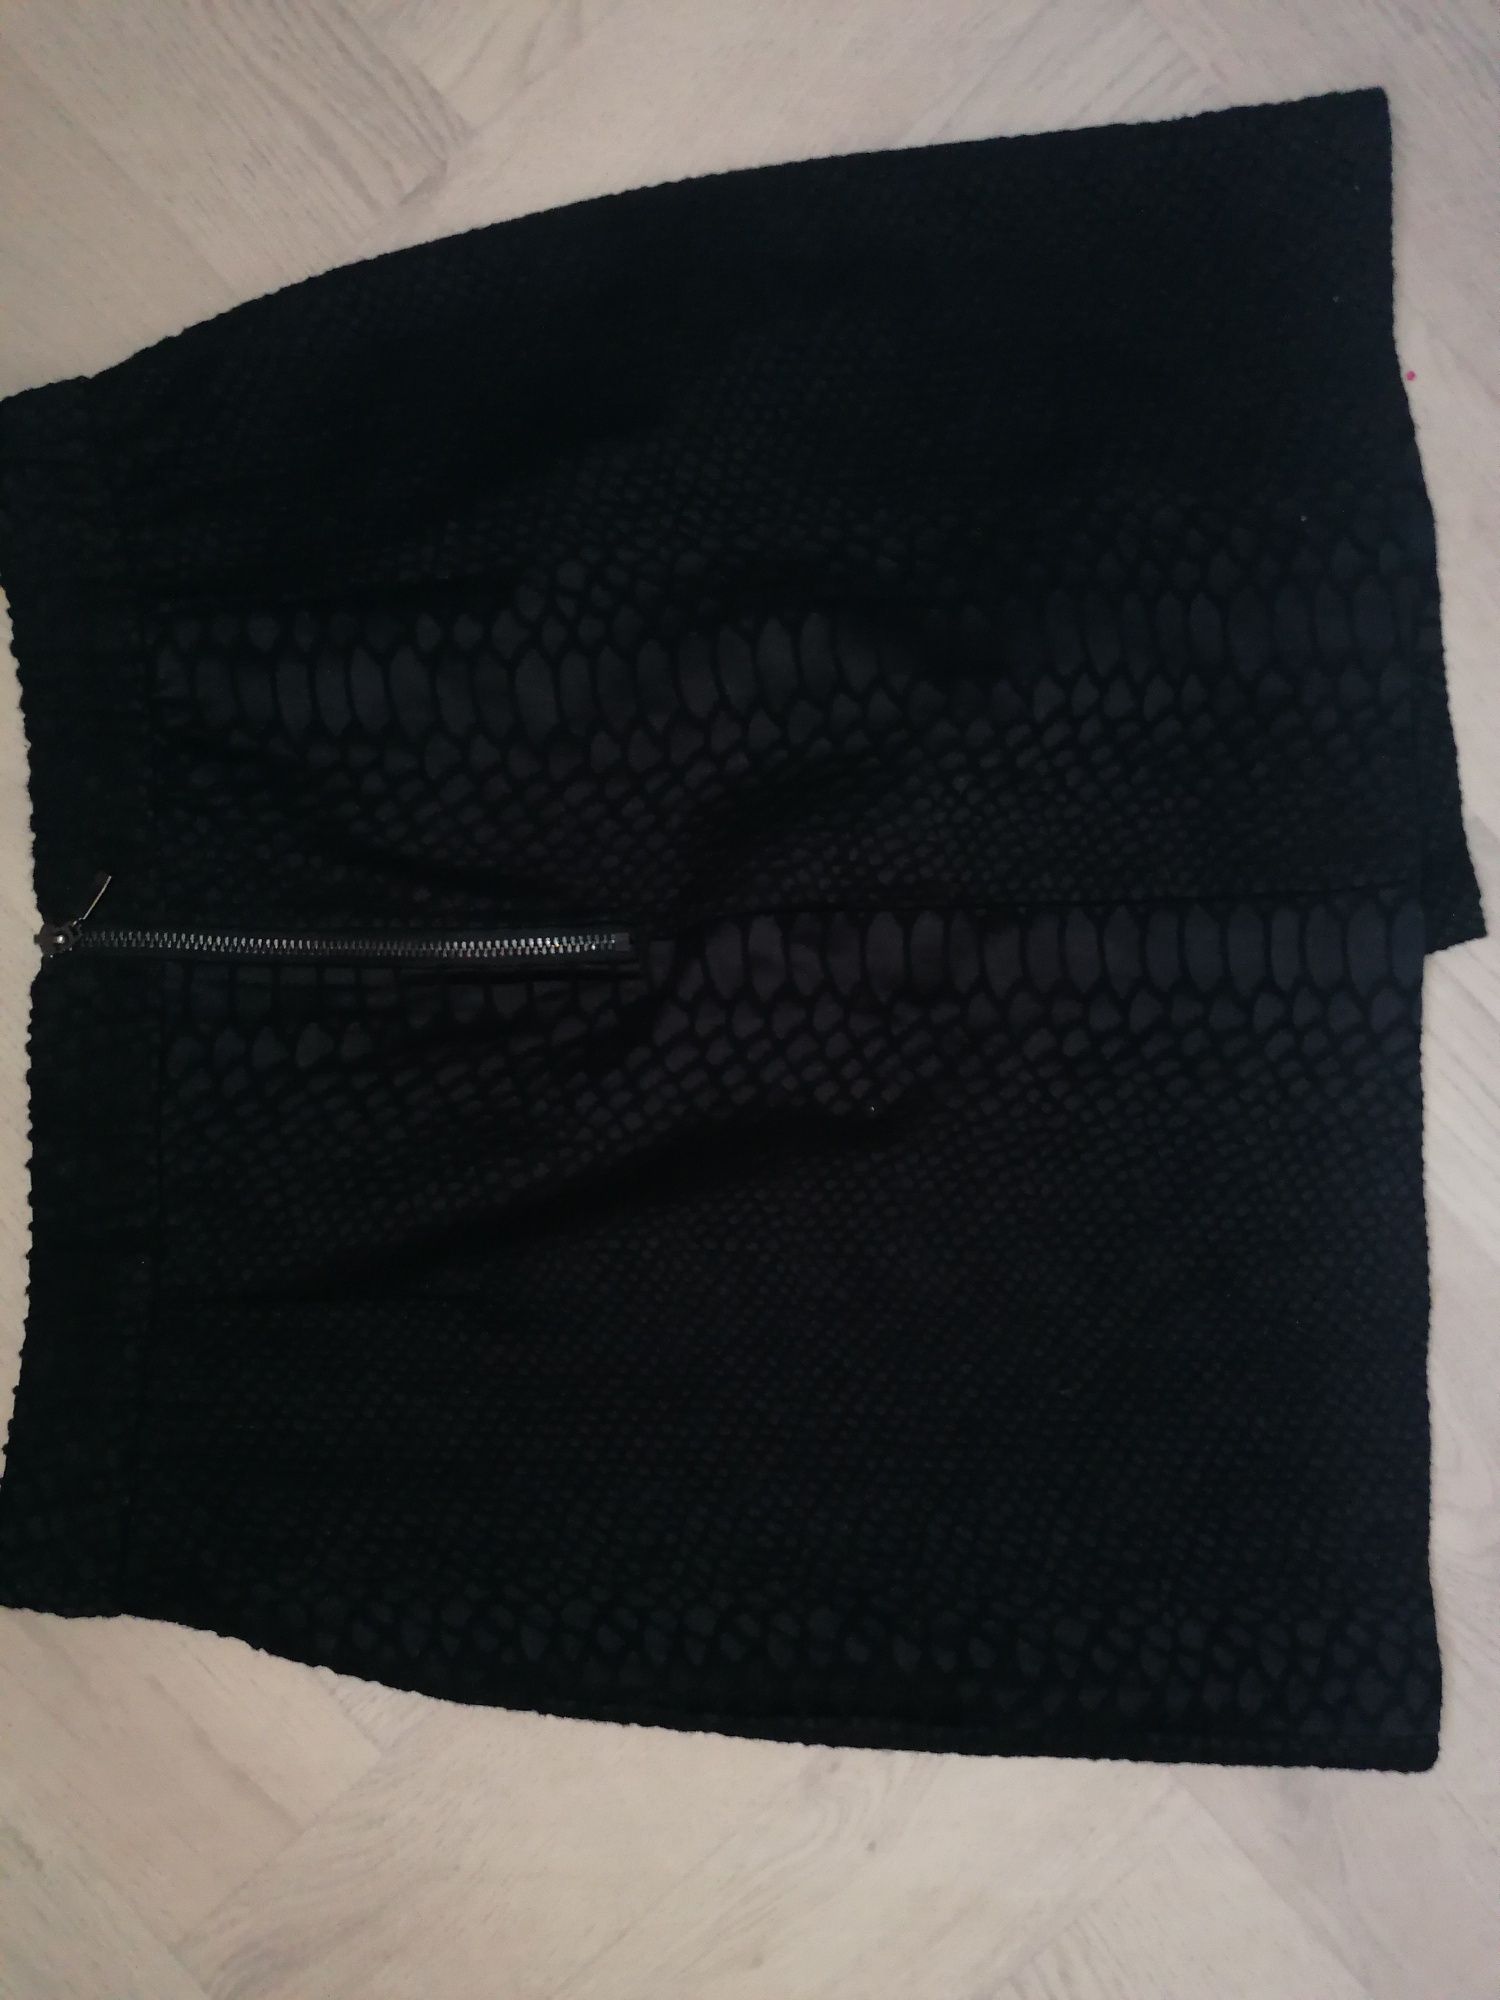 Spódnica topshop M L czarna asymetryczna wzór